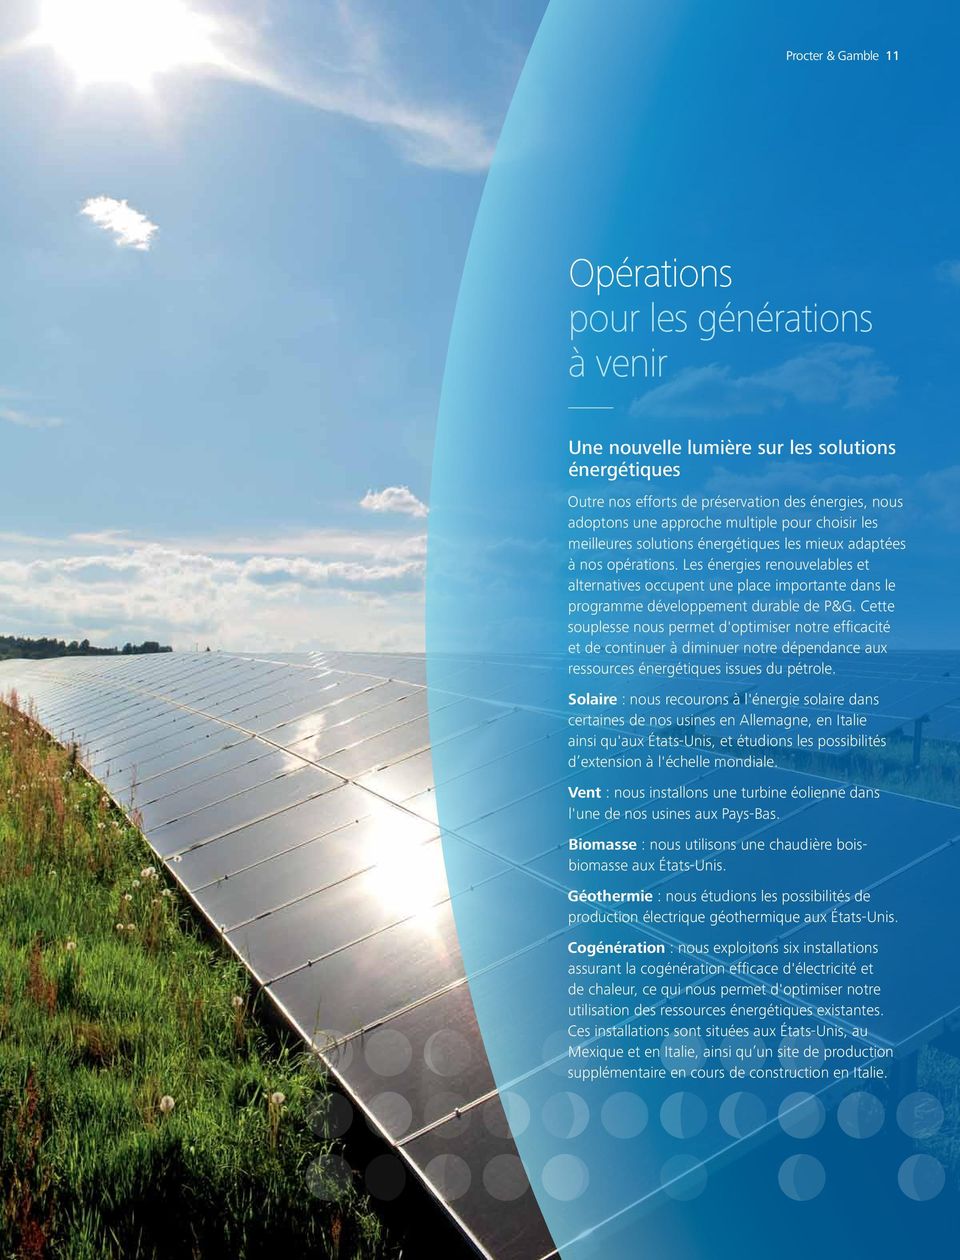 Les énergies renouvelables et alternatives occupent une place importante dans le programme développement durable de P&G.